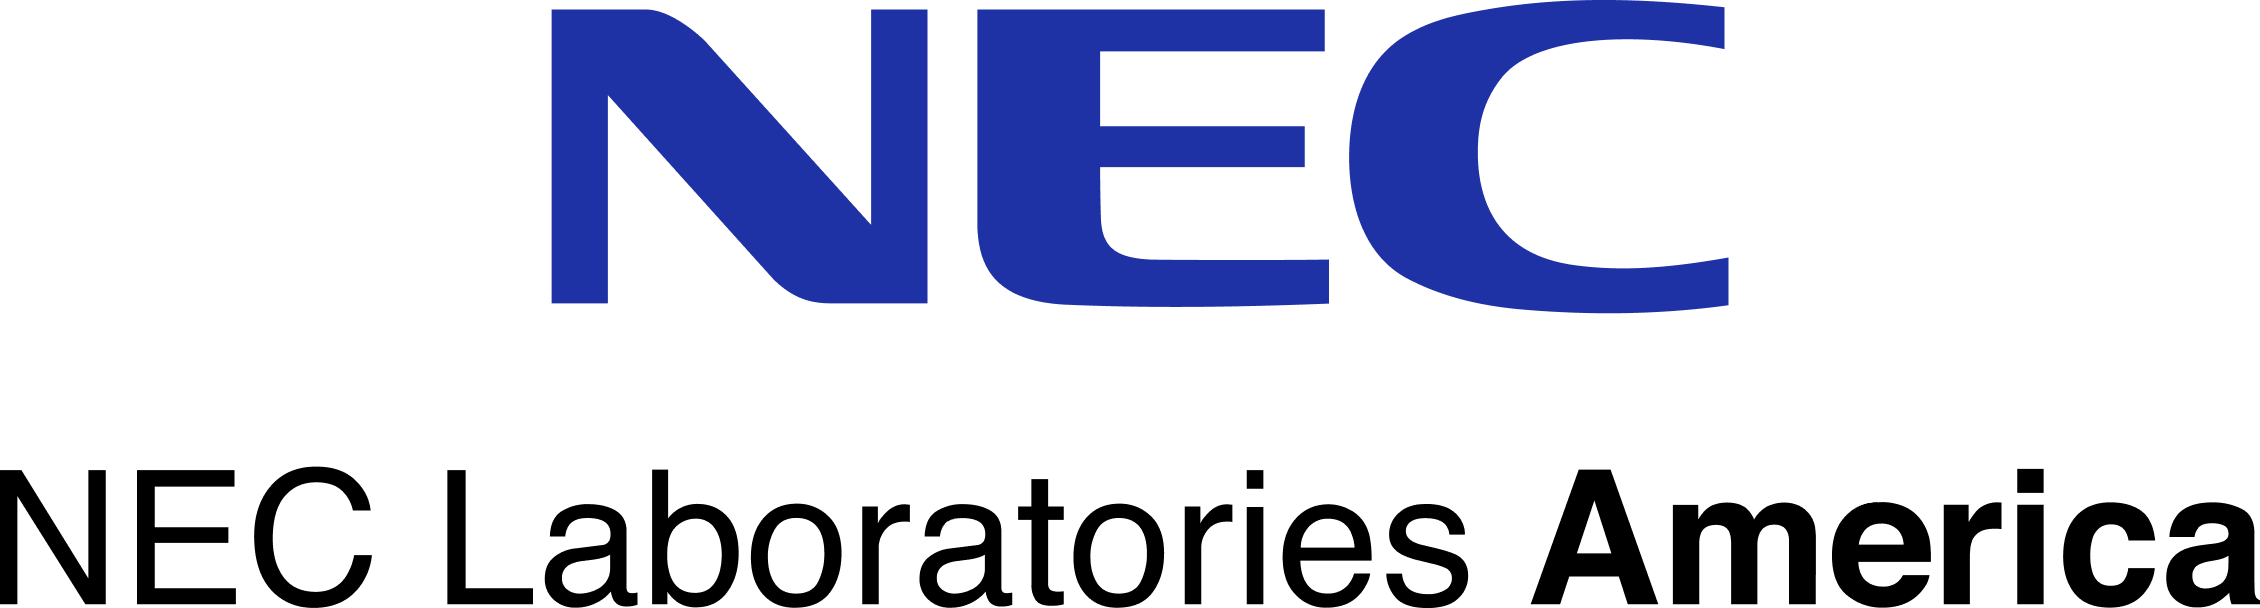 NEC Laboratories America, Inc. (NEC Labs)